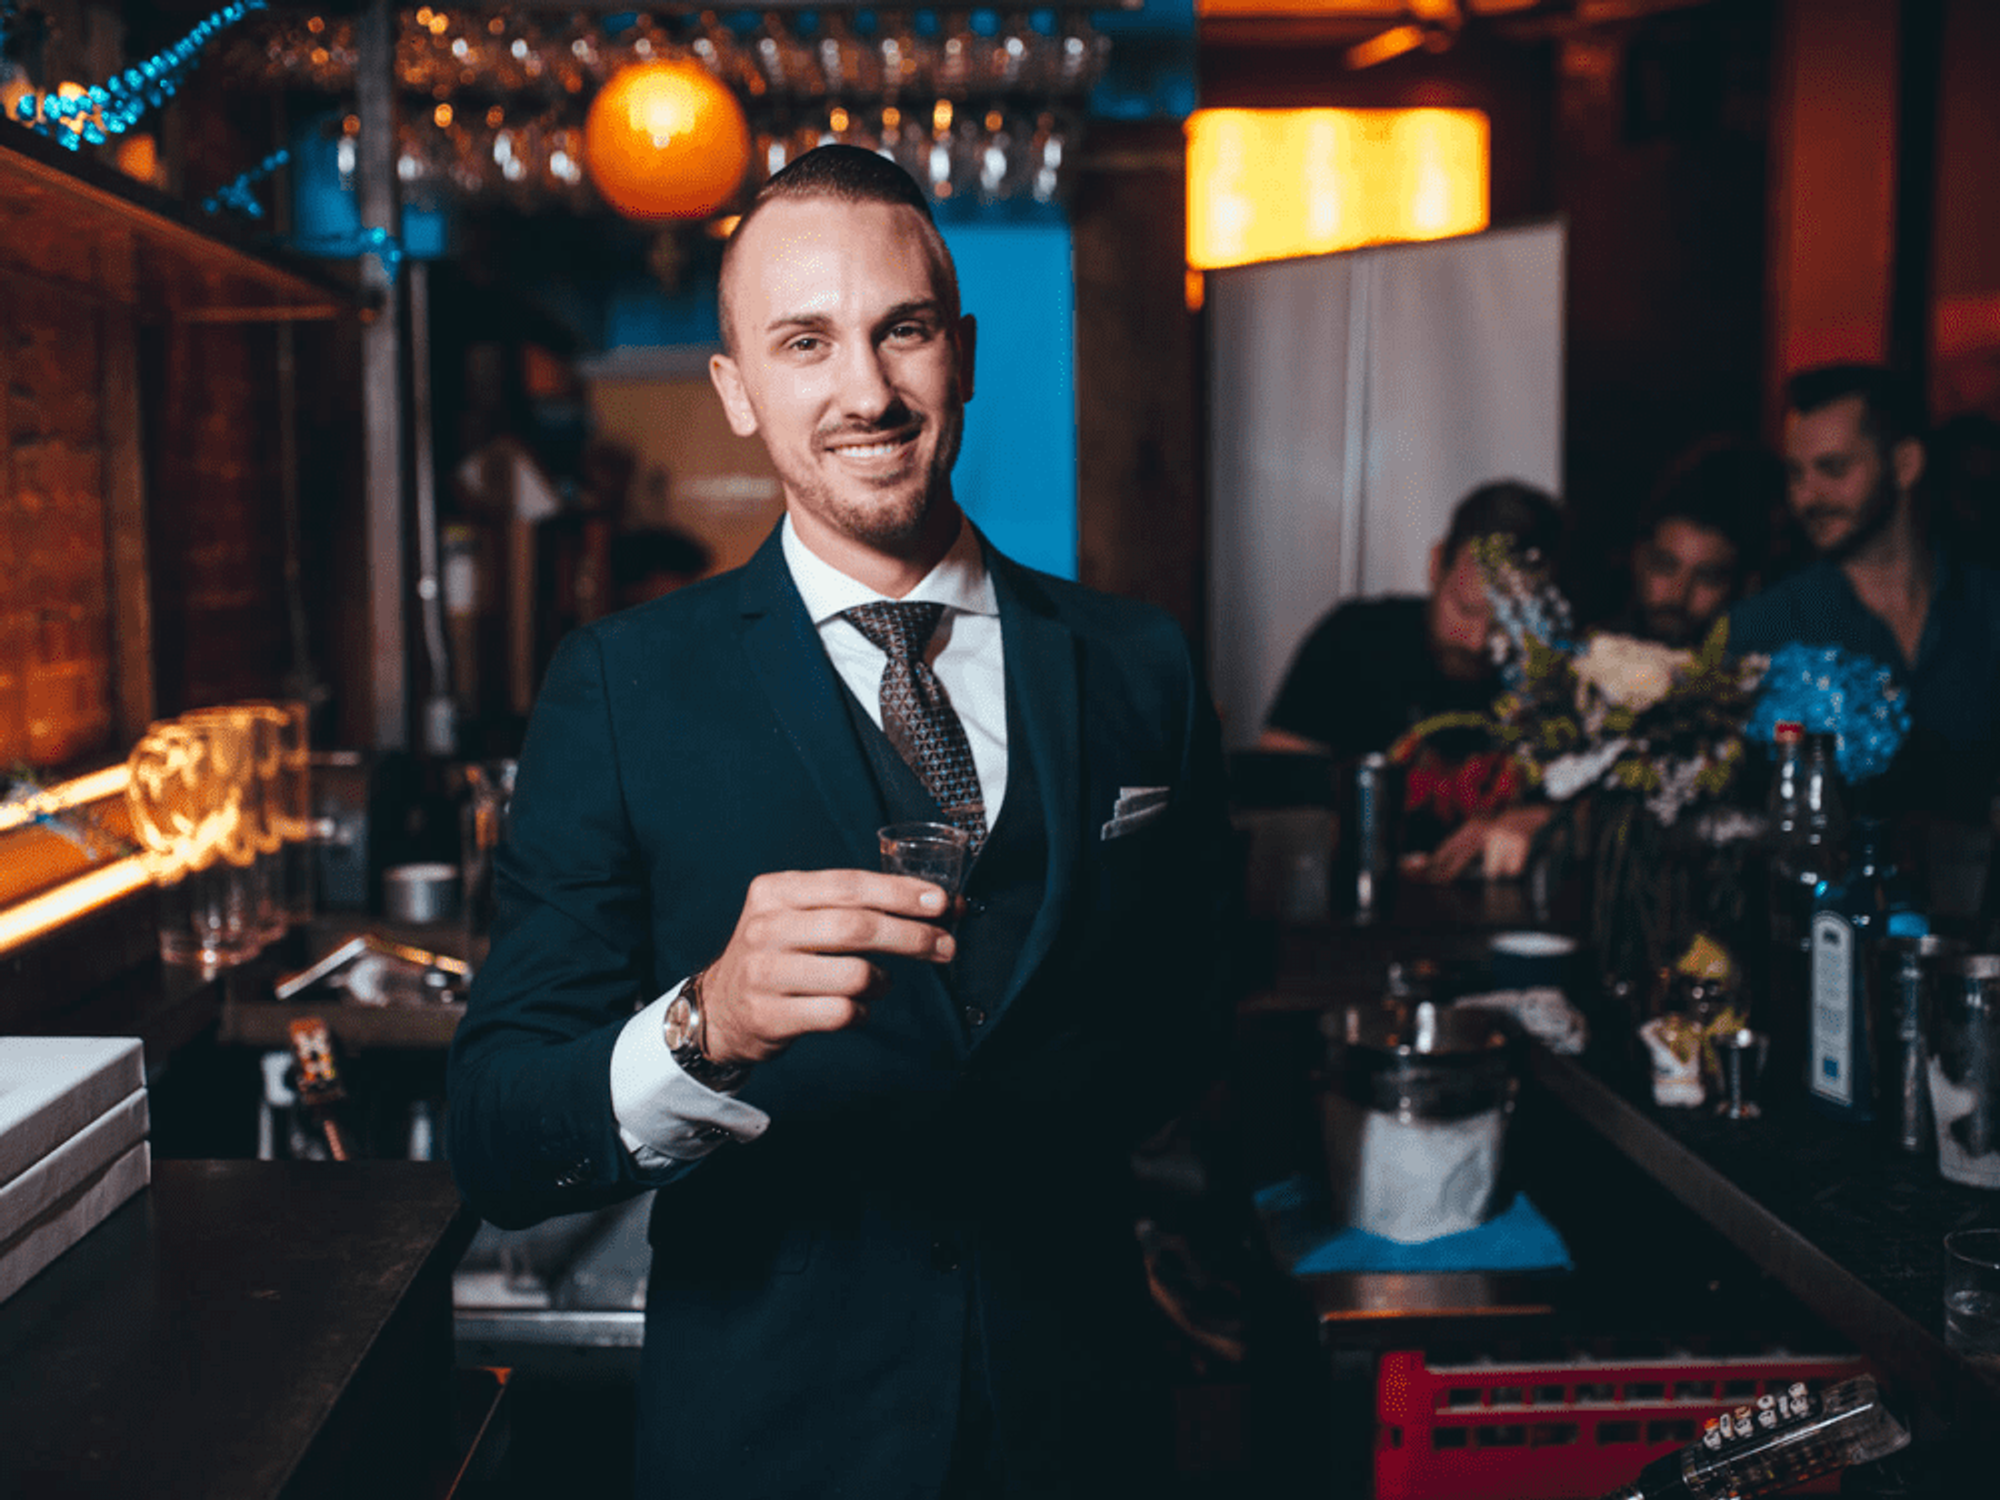 Justin Lavenue with his winning cocktail, L'Etoile de la Nuit